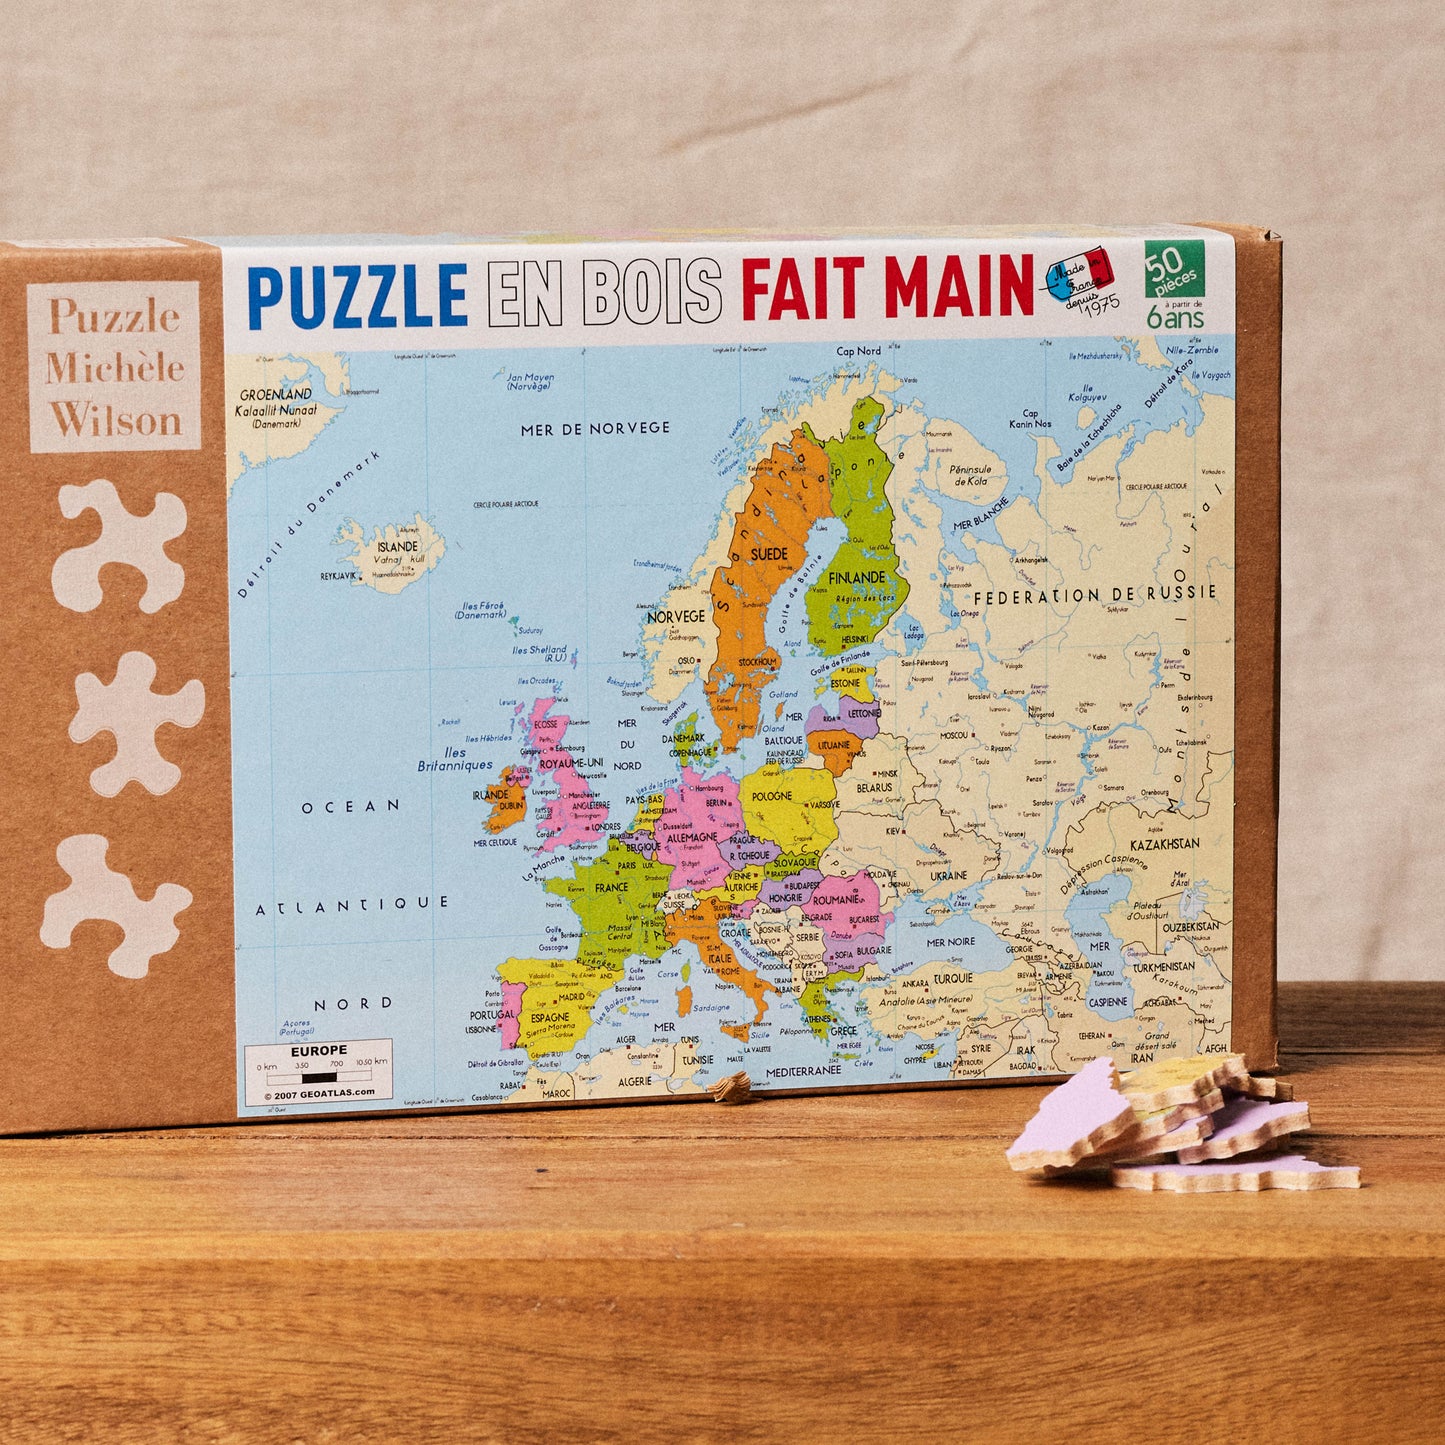 Puzzle Michèle Wilson - La Carte d'Europe